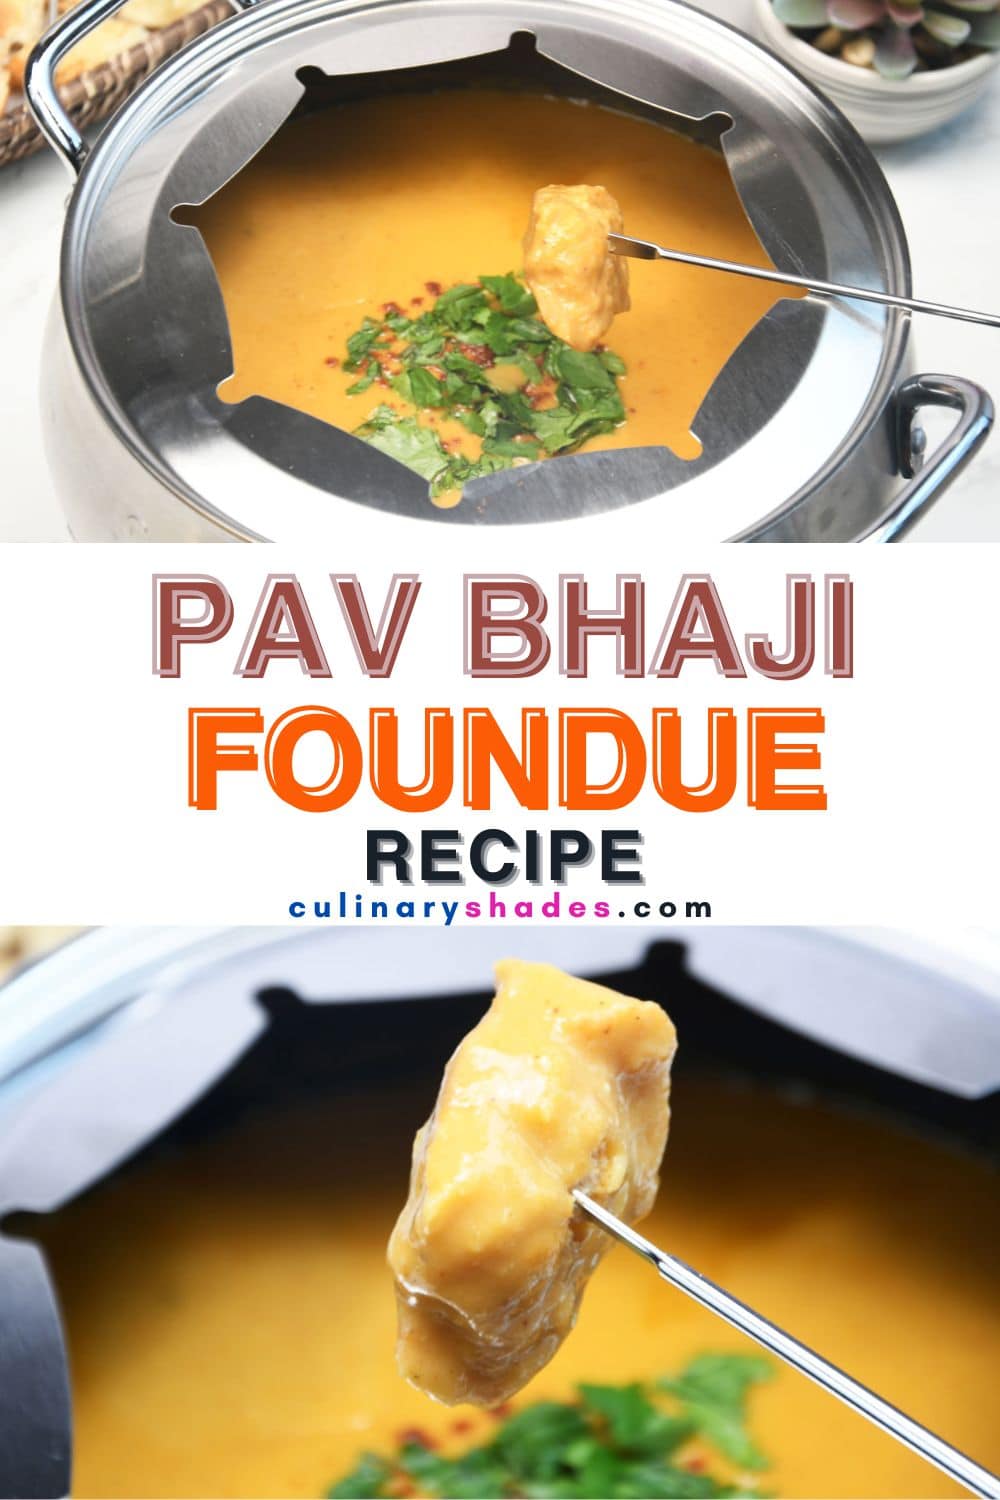 Bread piece in skewer with Pav bhaji fondue.